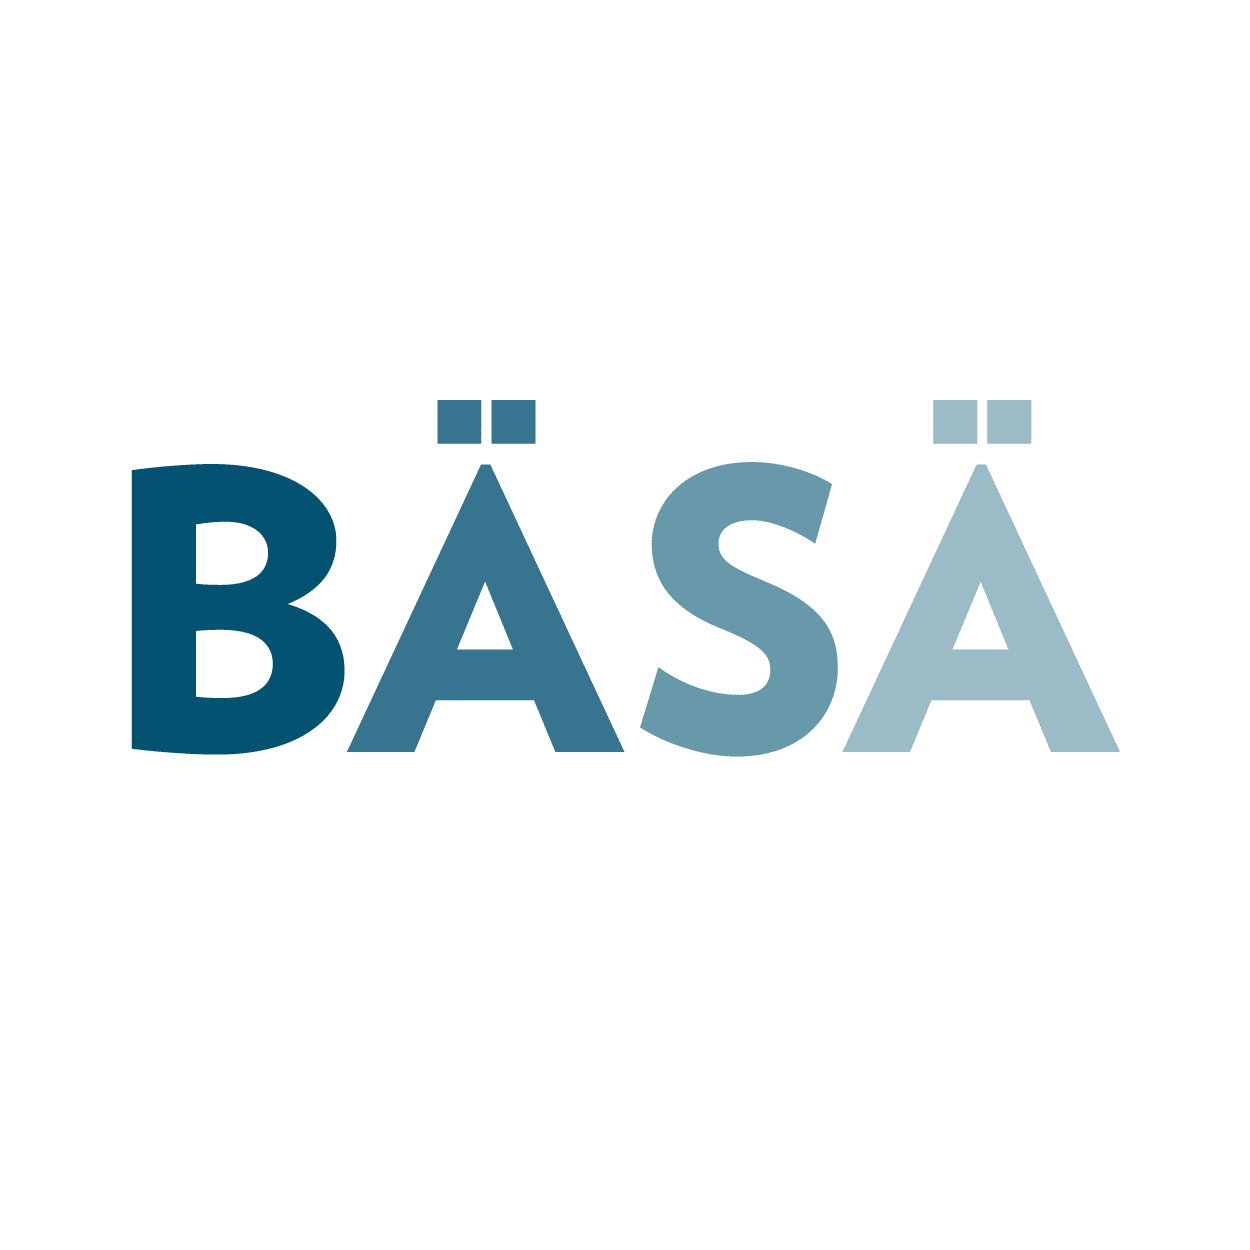 "BASA" logo